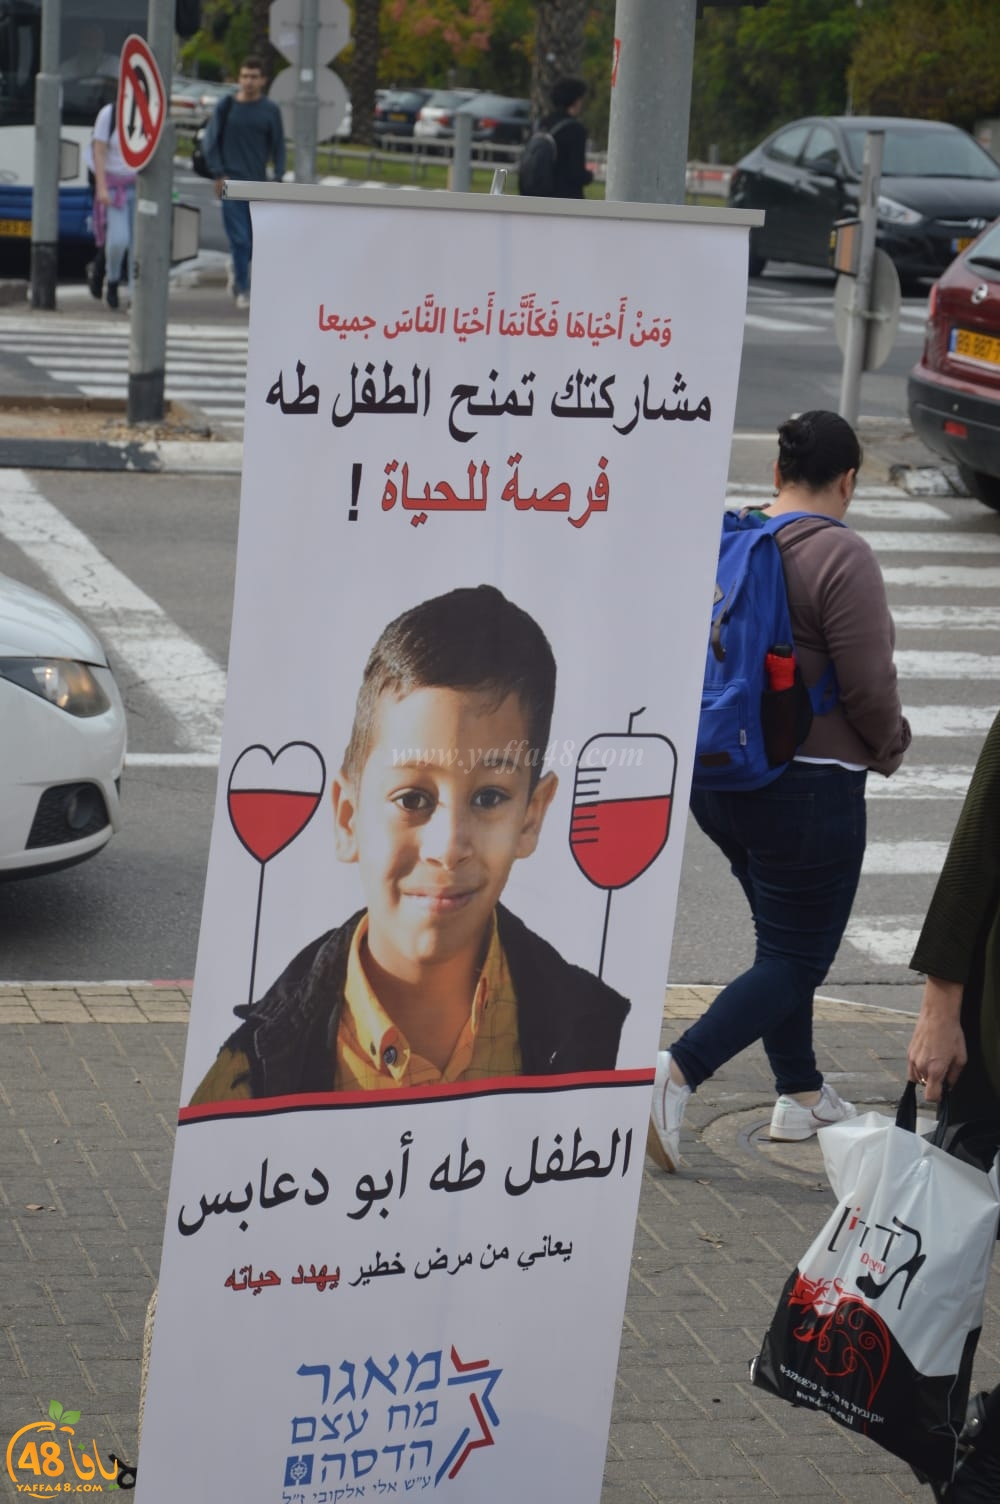  بعد نجاح الحملة في يافا - تجاوب كبير لانقاذ حياة الطفل طه ابو دعابس بجامعة تل ابيب